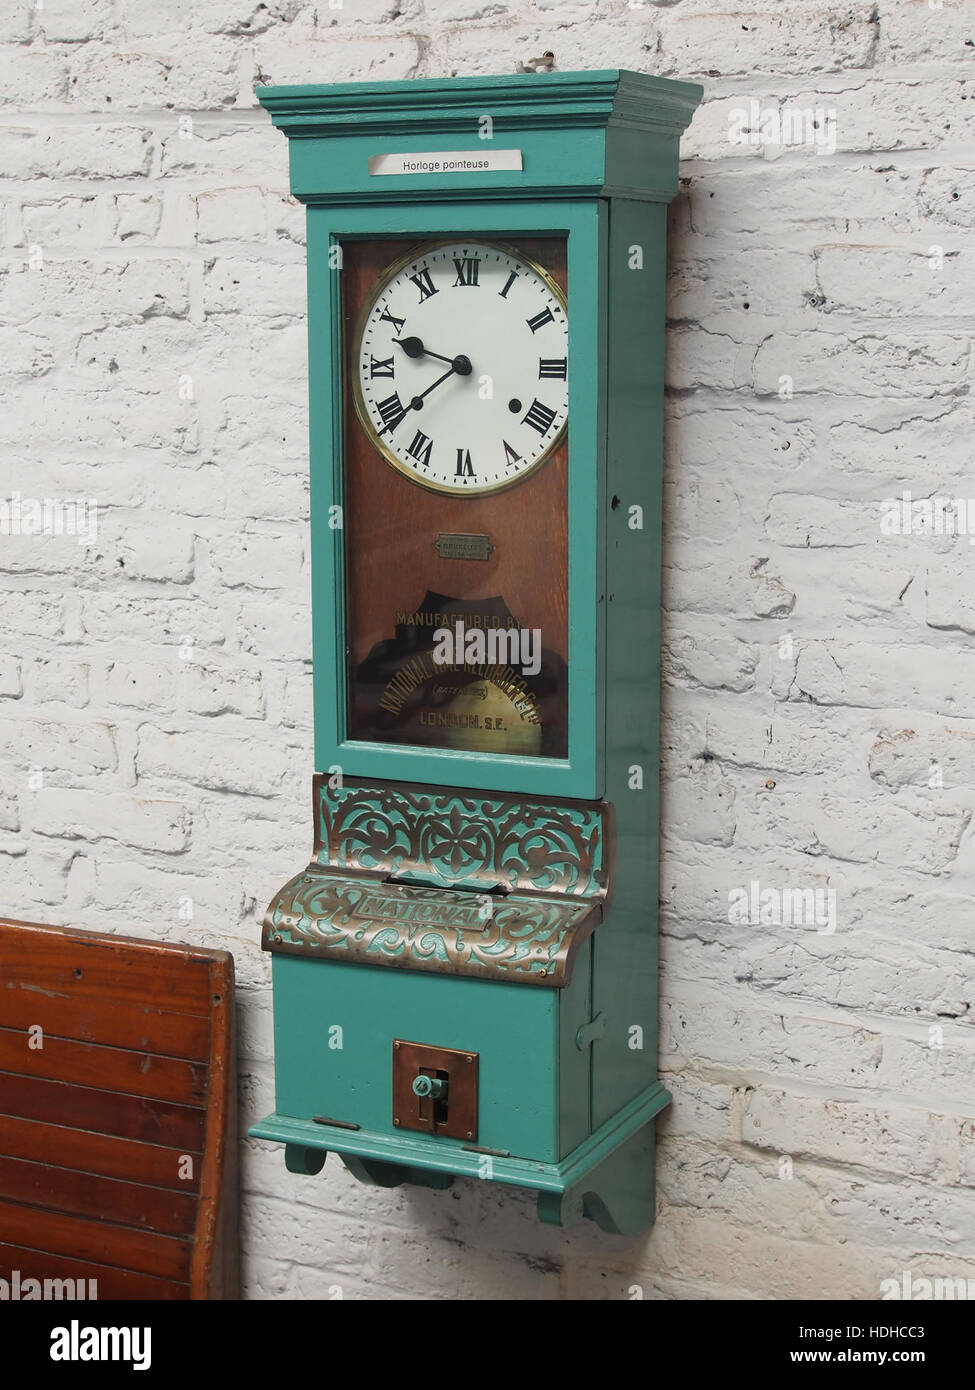 Horloge pointeuse fabriqués par l'enregistreur de temps nationales Co Ltd, Londres SE5 pic Banque D'Images